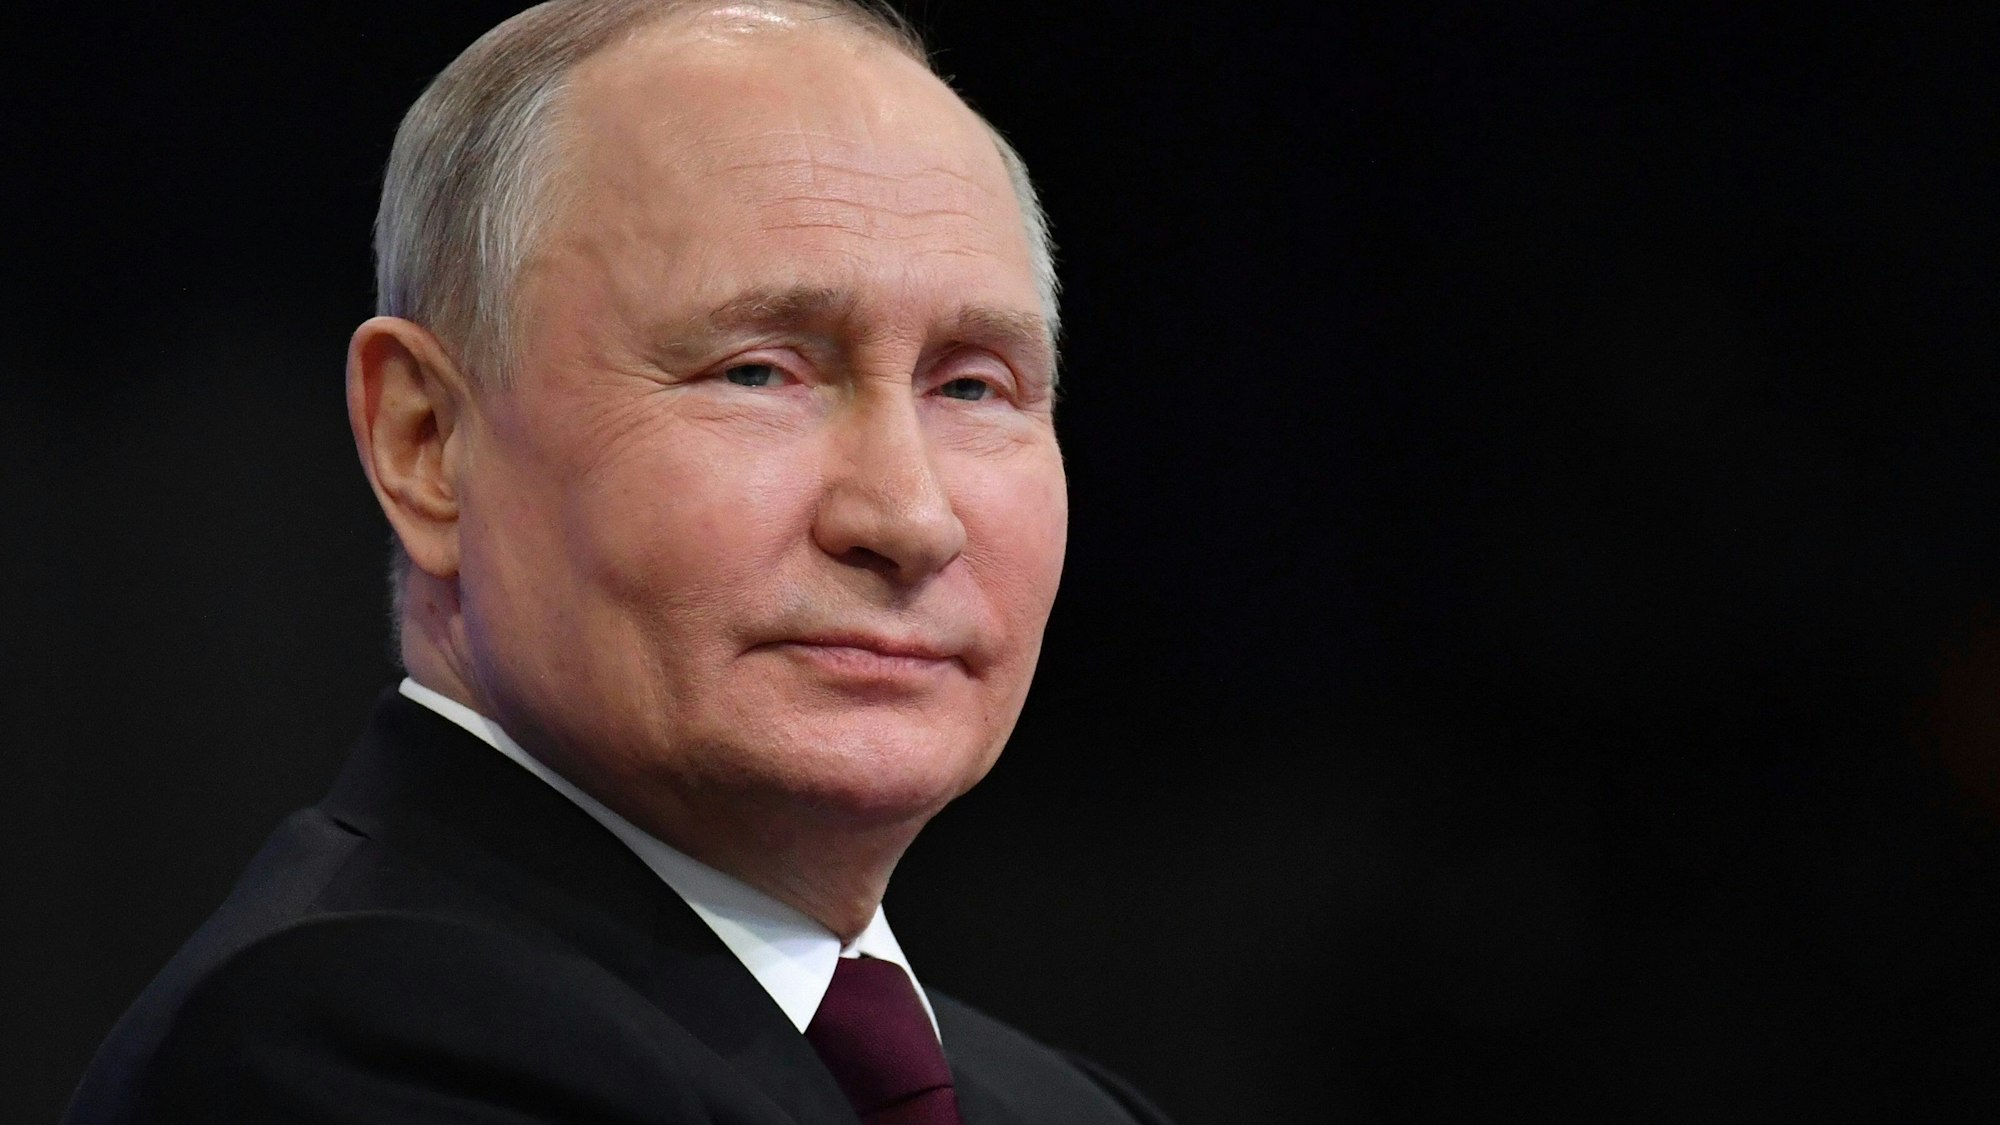 Das von der staatlichen russischen Nachrichtenagentur Sputnik via AP veröffentlichte Bild zeigt Wladimir Putin am 14. Dezember während einer Pressekonferenz.